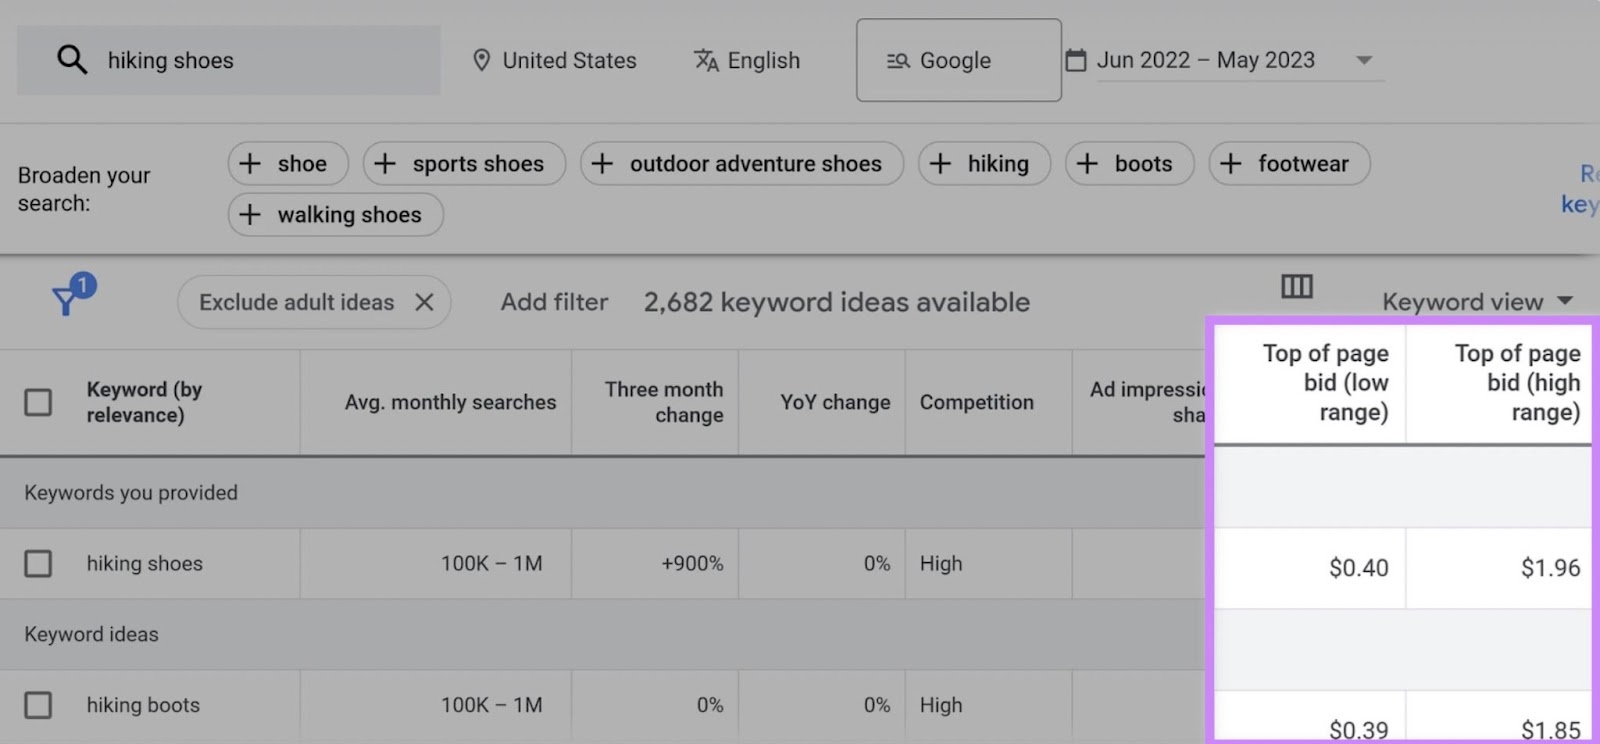 Total bid range for target keywords in Google Ads